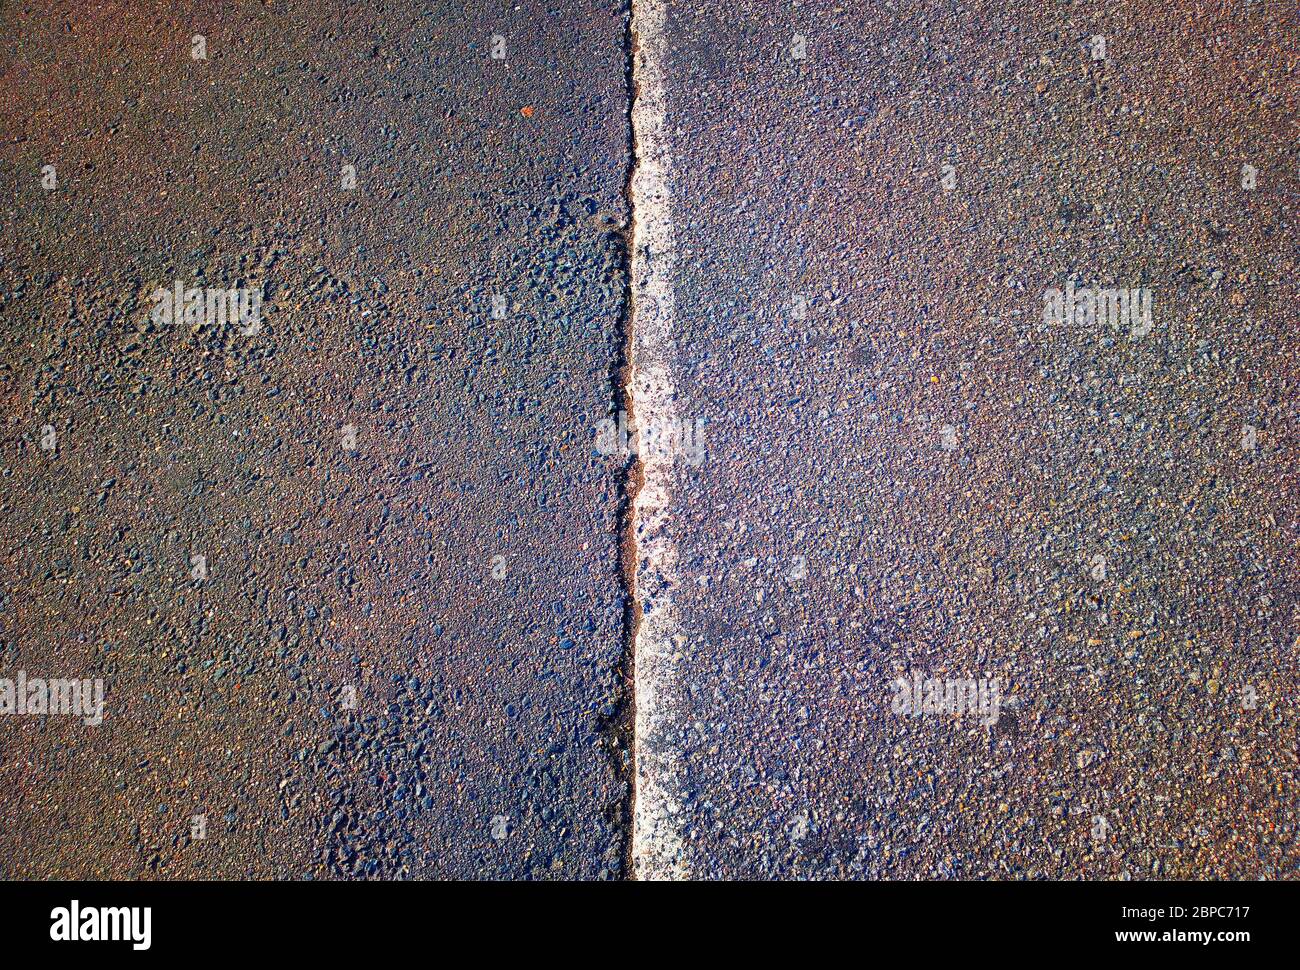 Dividing pit line on asphalt road background Stock Photo